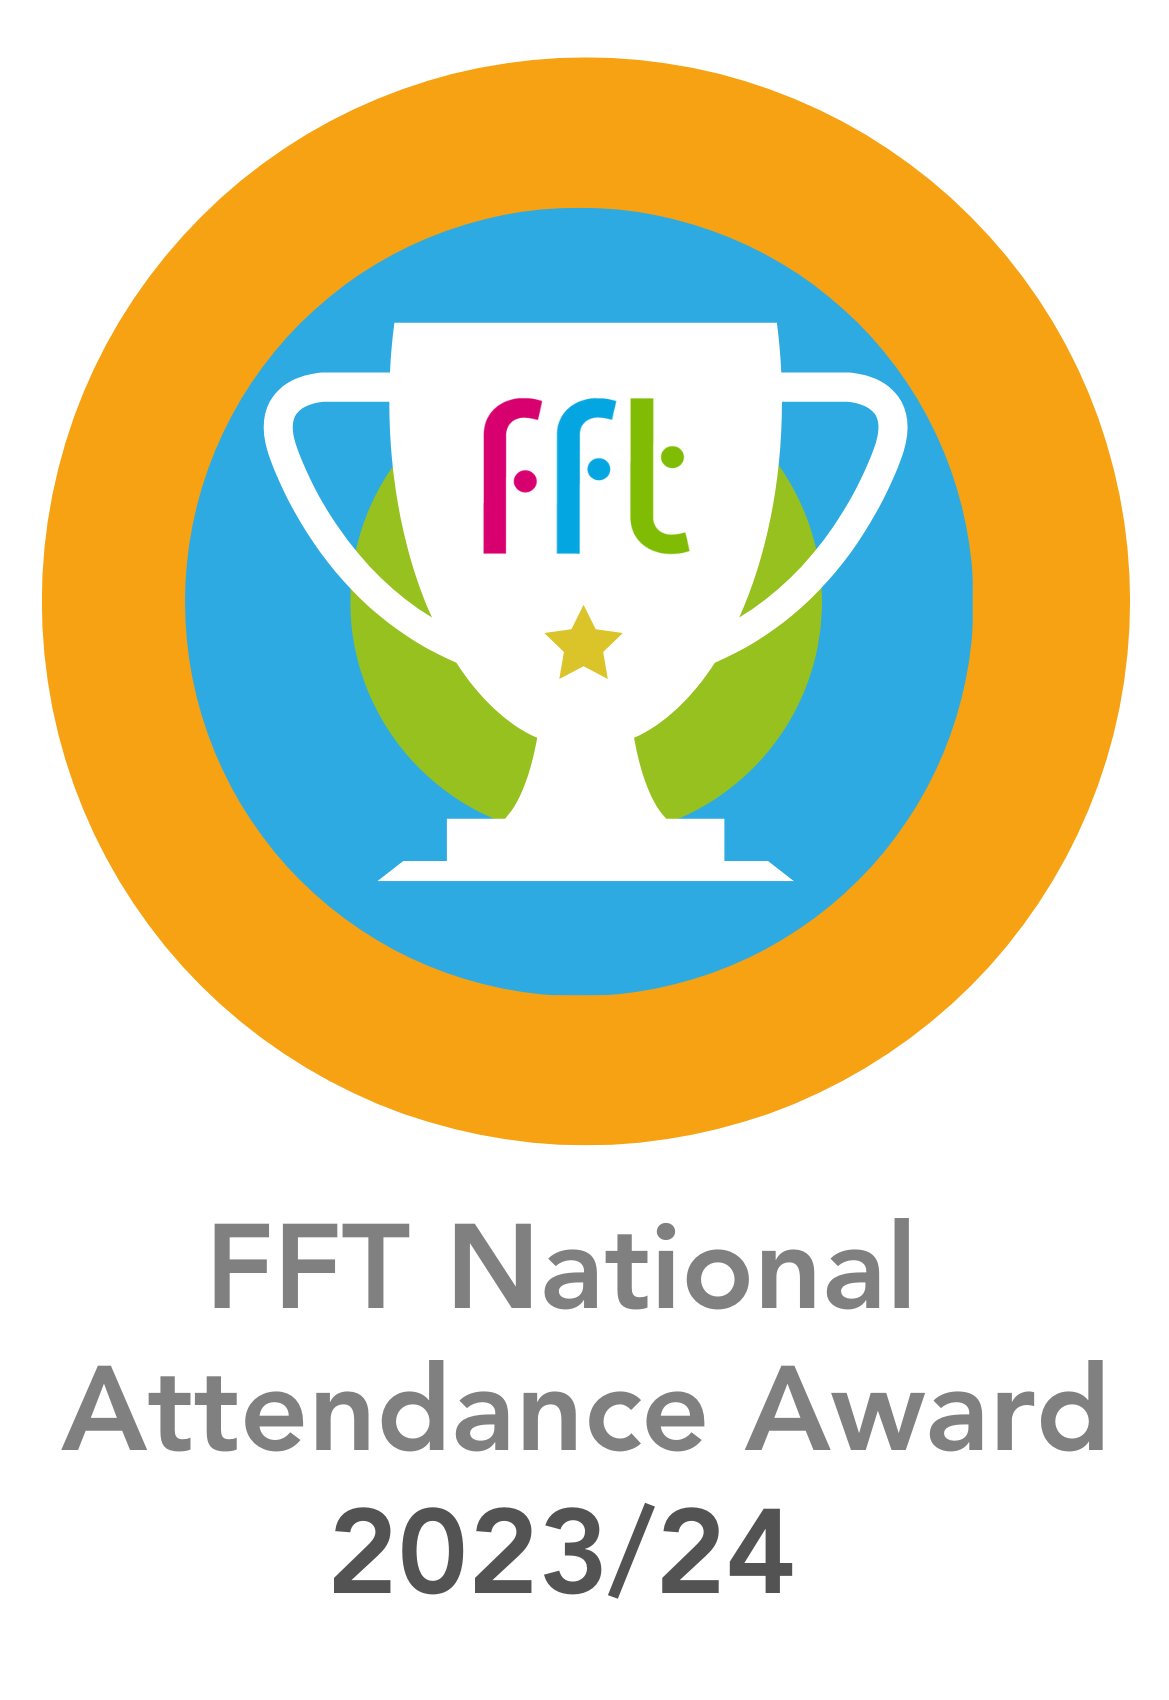 FFT National Attendance Award 2023 2024